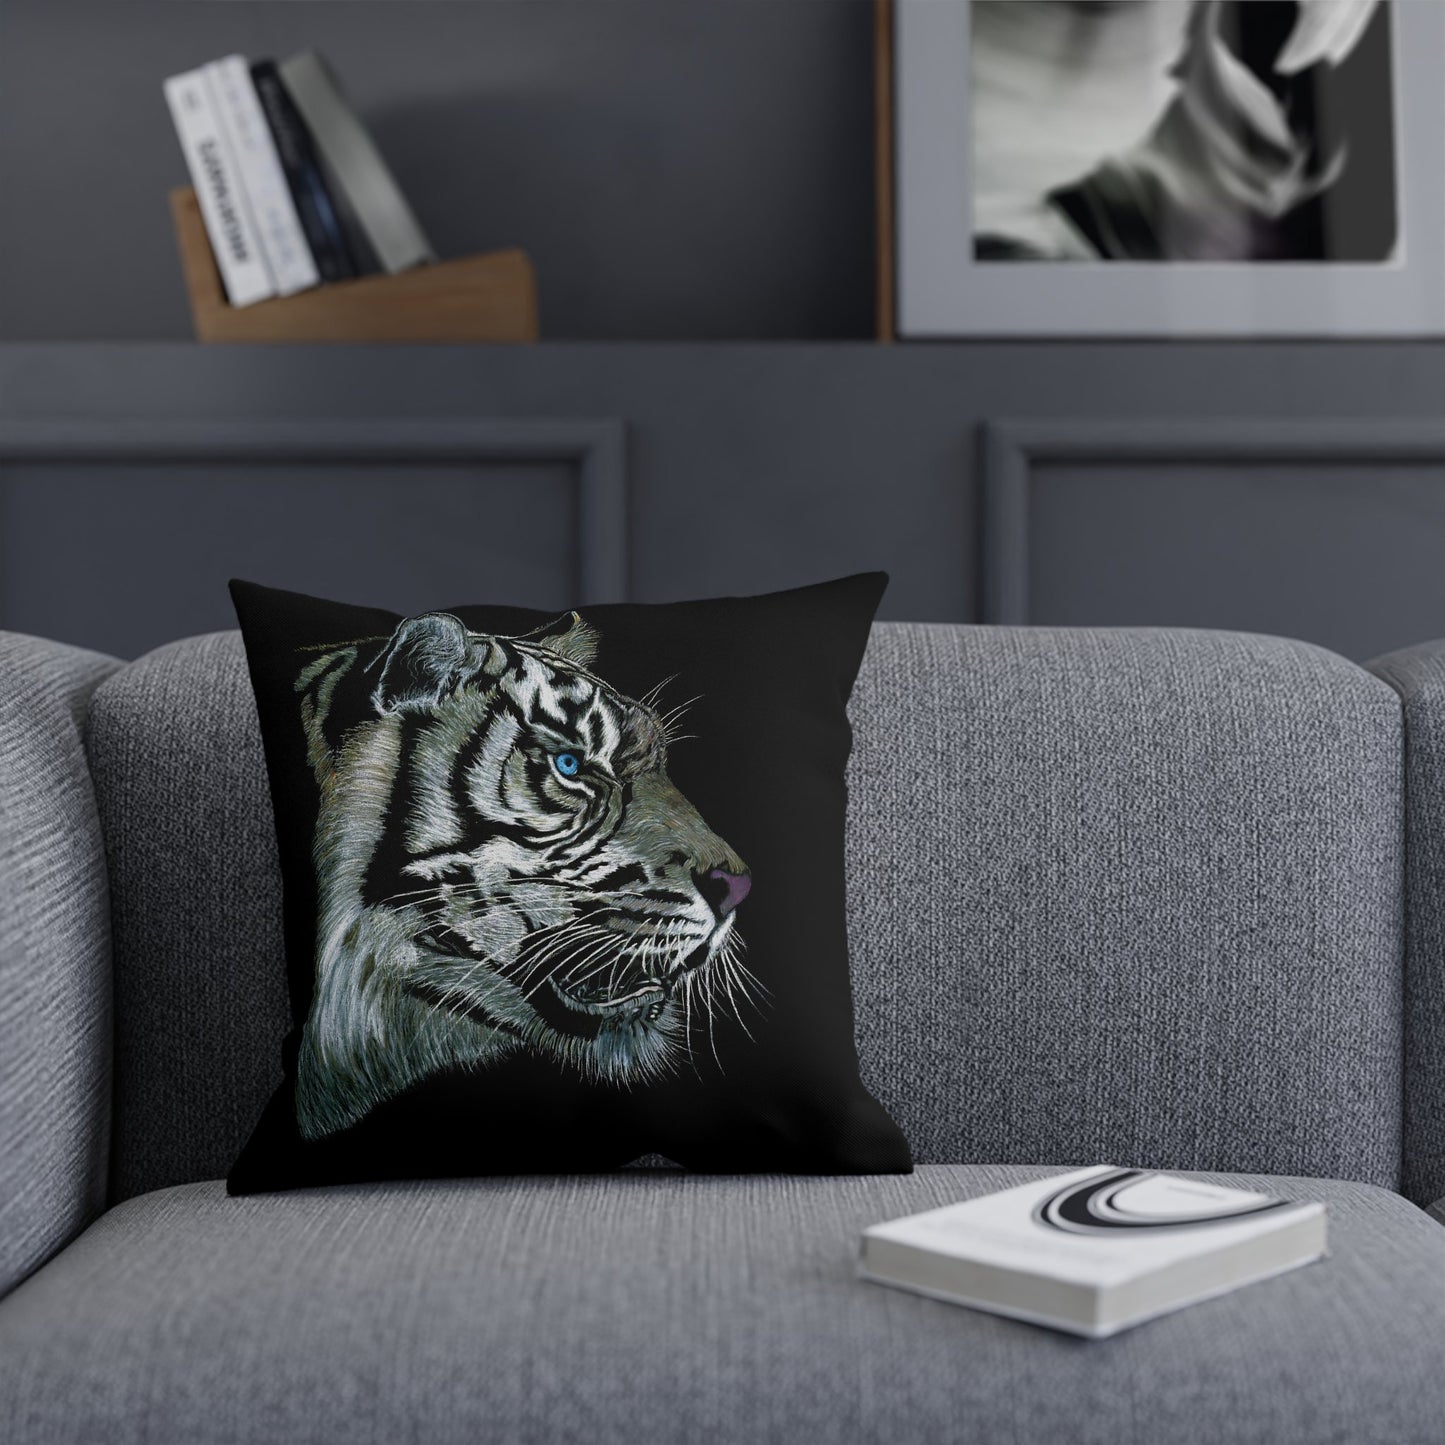 Spun Polyester Throw Pillow - "WHITE TIGER"